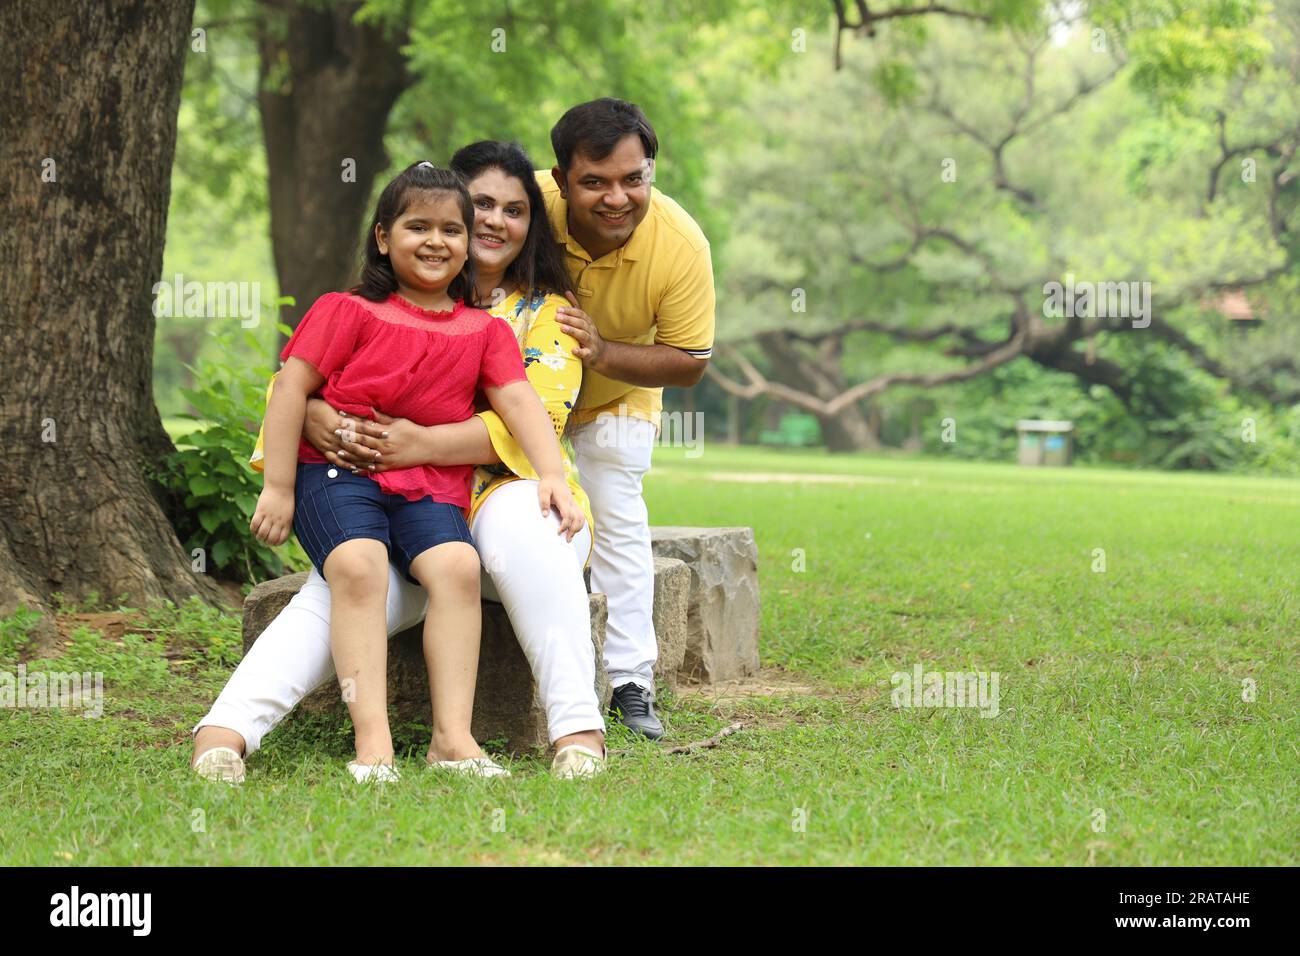 Glückliche indische Familie mit einem Mädchen, das zusammen auf dem Gras sitzt und ihre Familienzeit am frühen Morgen genießt. Die Familie schaut in die Kamera. Stockfoto